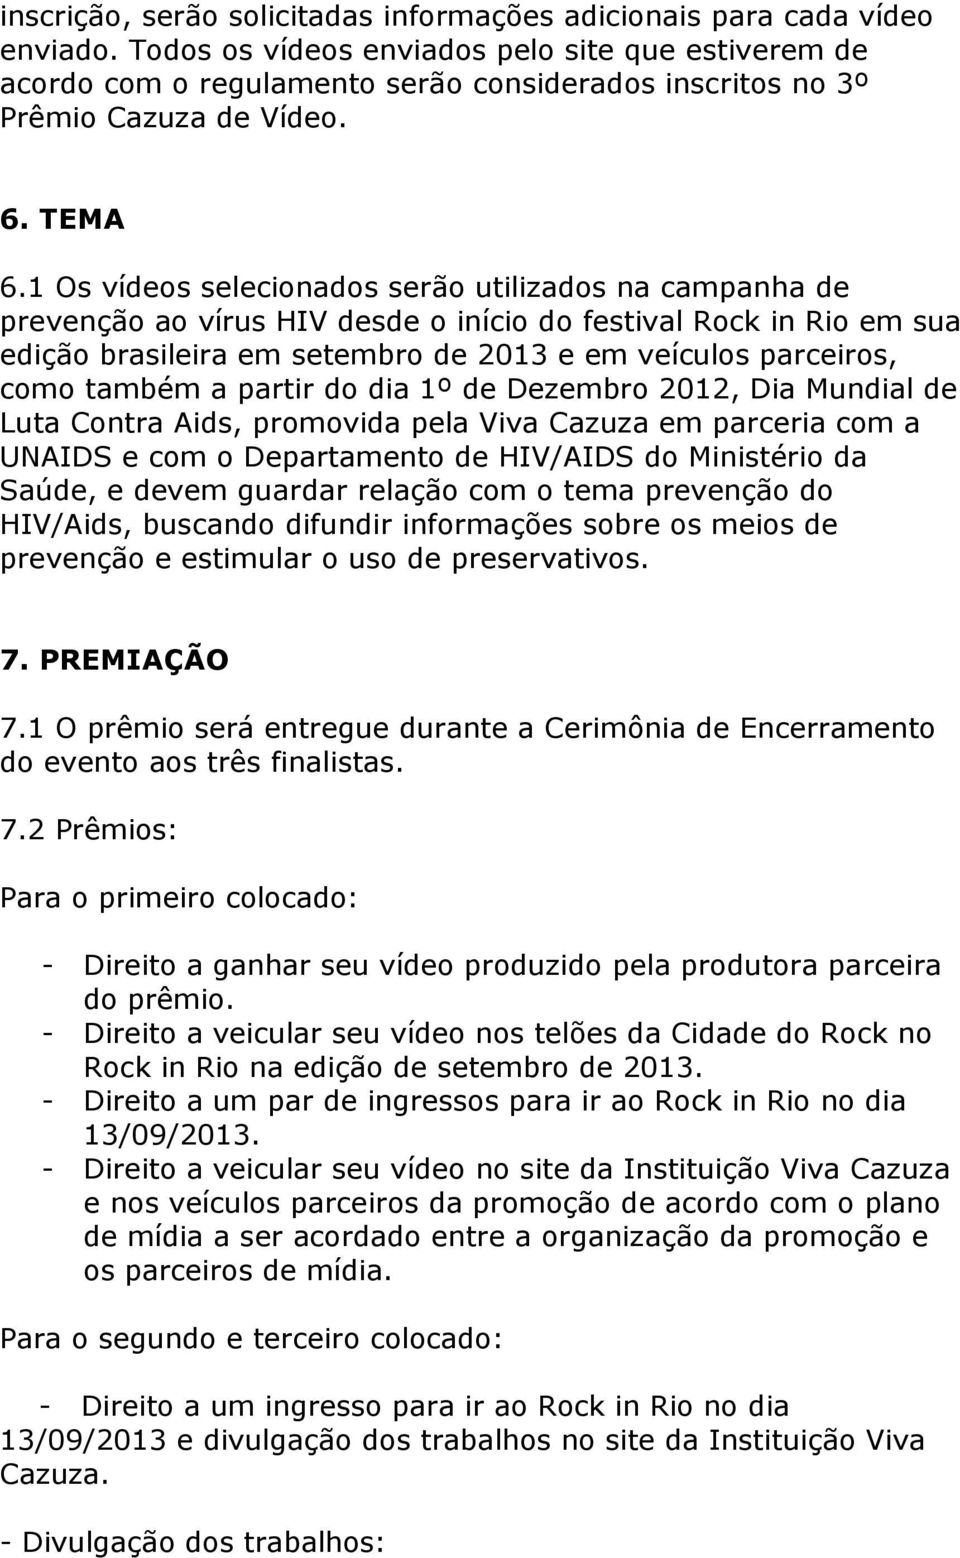 1 Os vídeos selecionados serão utilizados na campanha de prevenção ao vírus HIV desde o início do festival Rock in Rio em sua edição brasileira em setembro de 2013 e em veículos parceiros, como